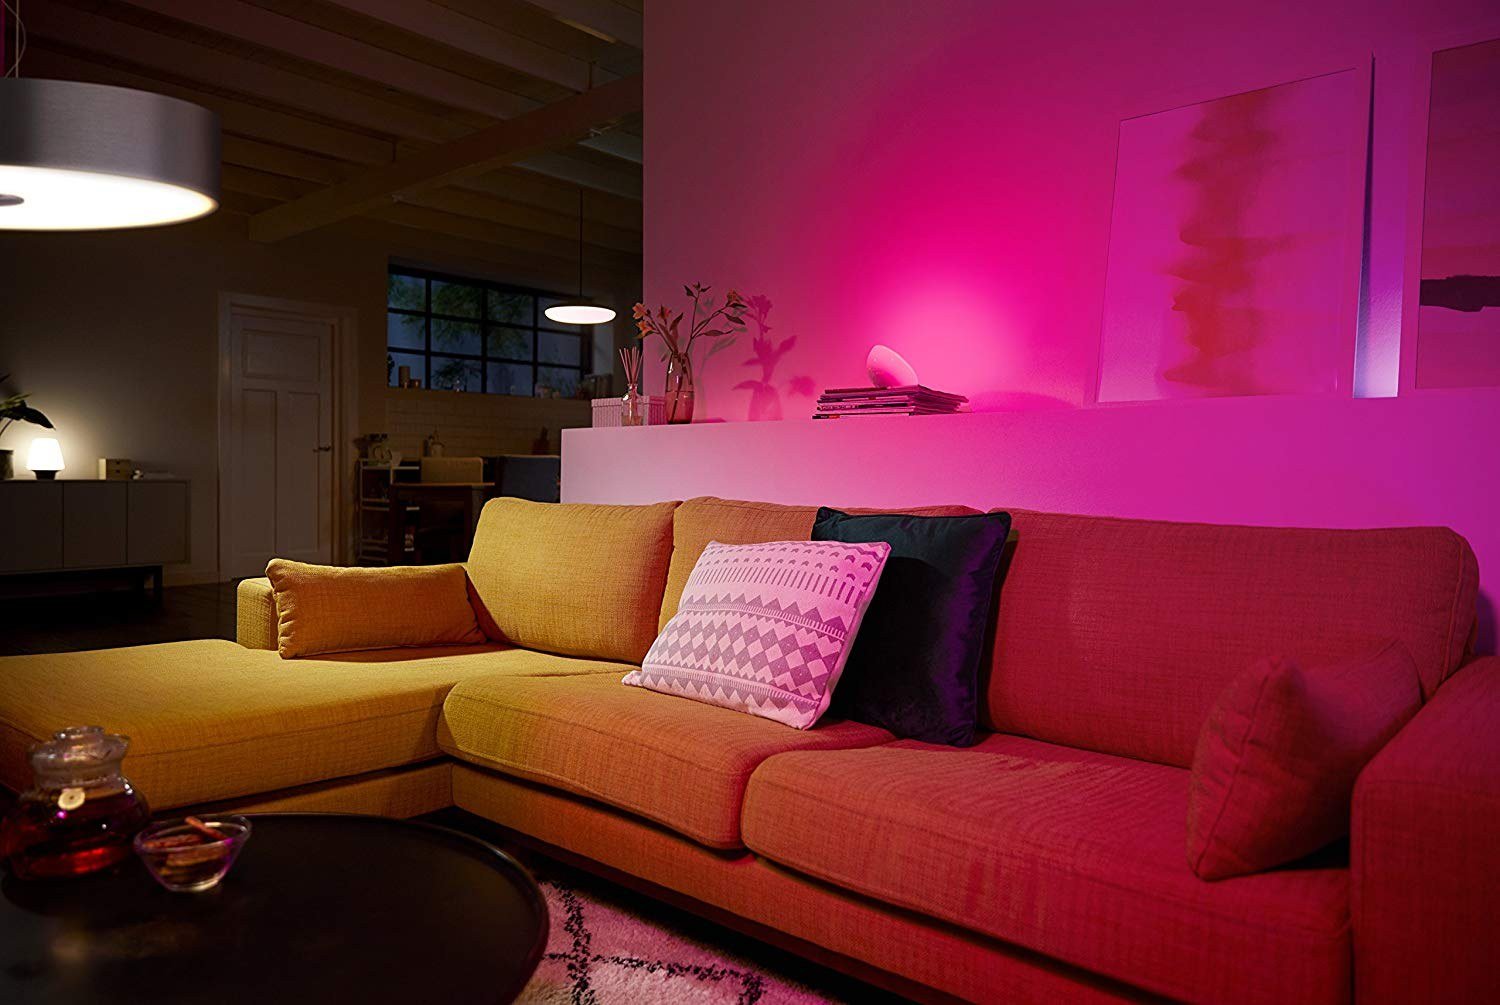 Комната была освещена ровным желтым светом. Philips Hue Room. Разноцветная подсветка. Цветное освещение в интерьере. Разноцветная подсветка для комнаты.